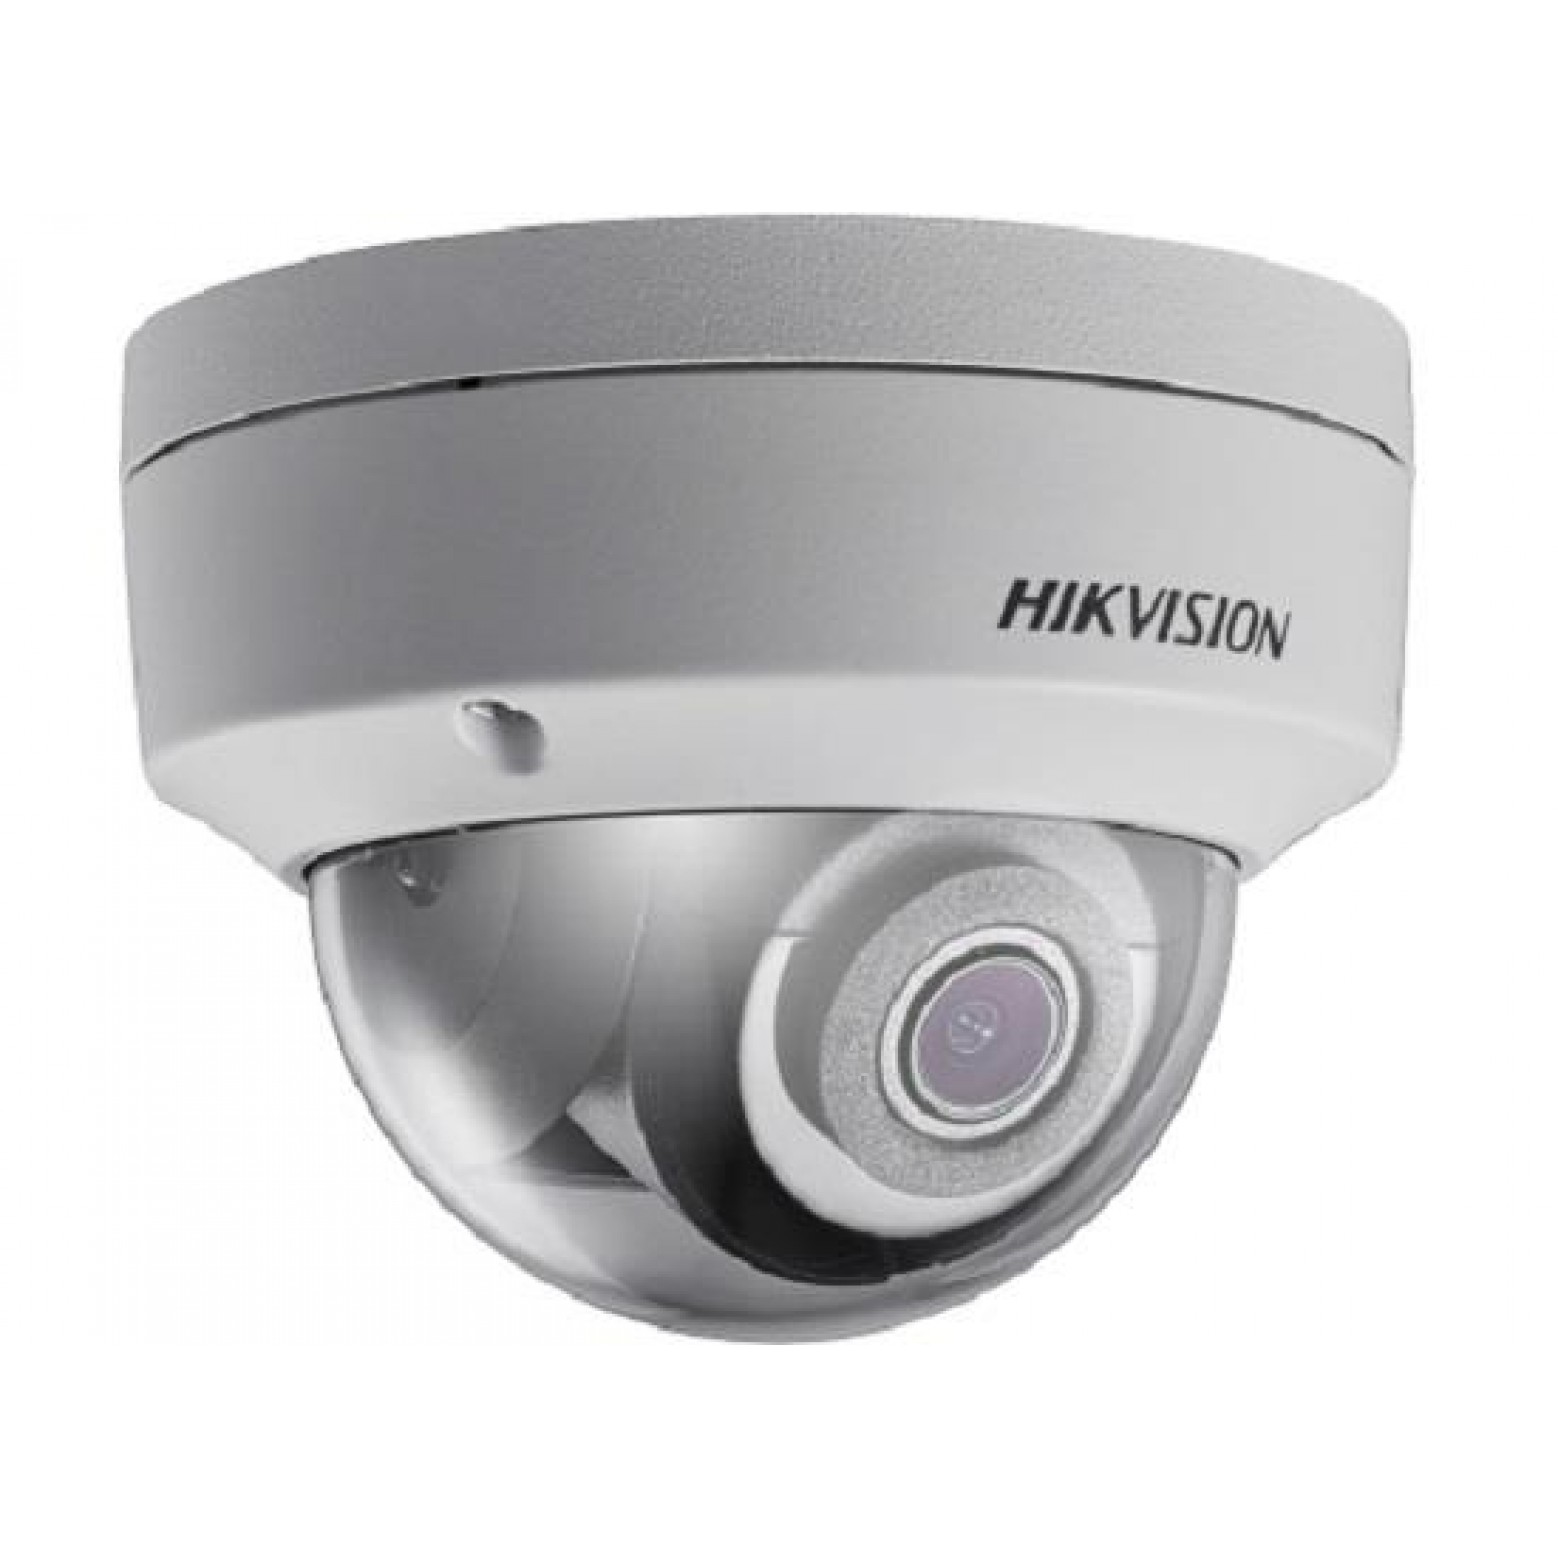 Hikvision DS-2CD2123G0-I Dome Camera Budget Line, 2MP, WDR, IR,